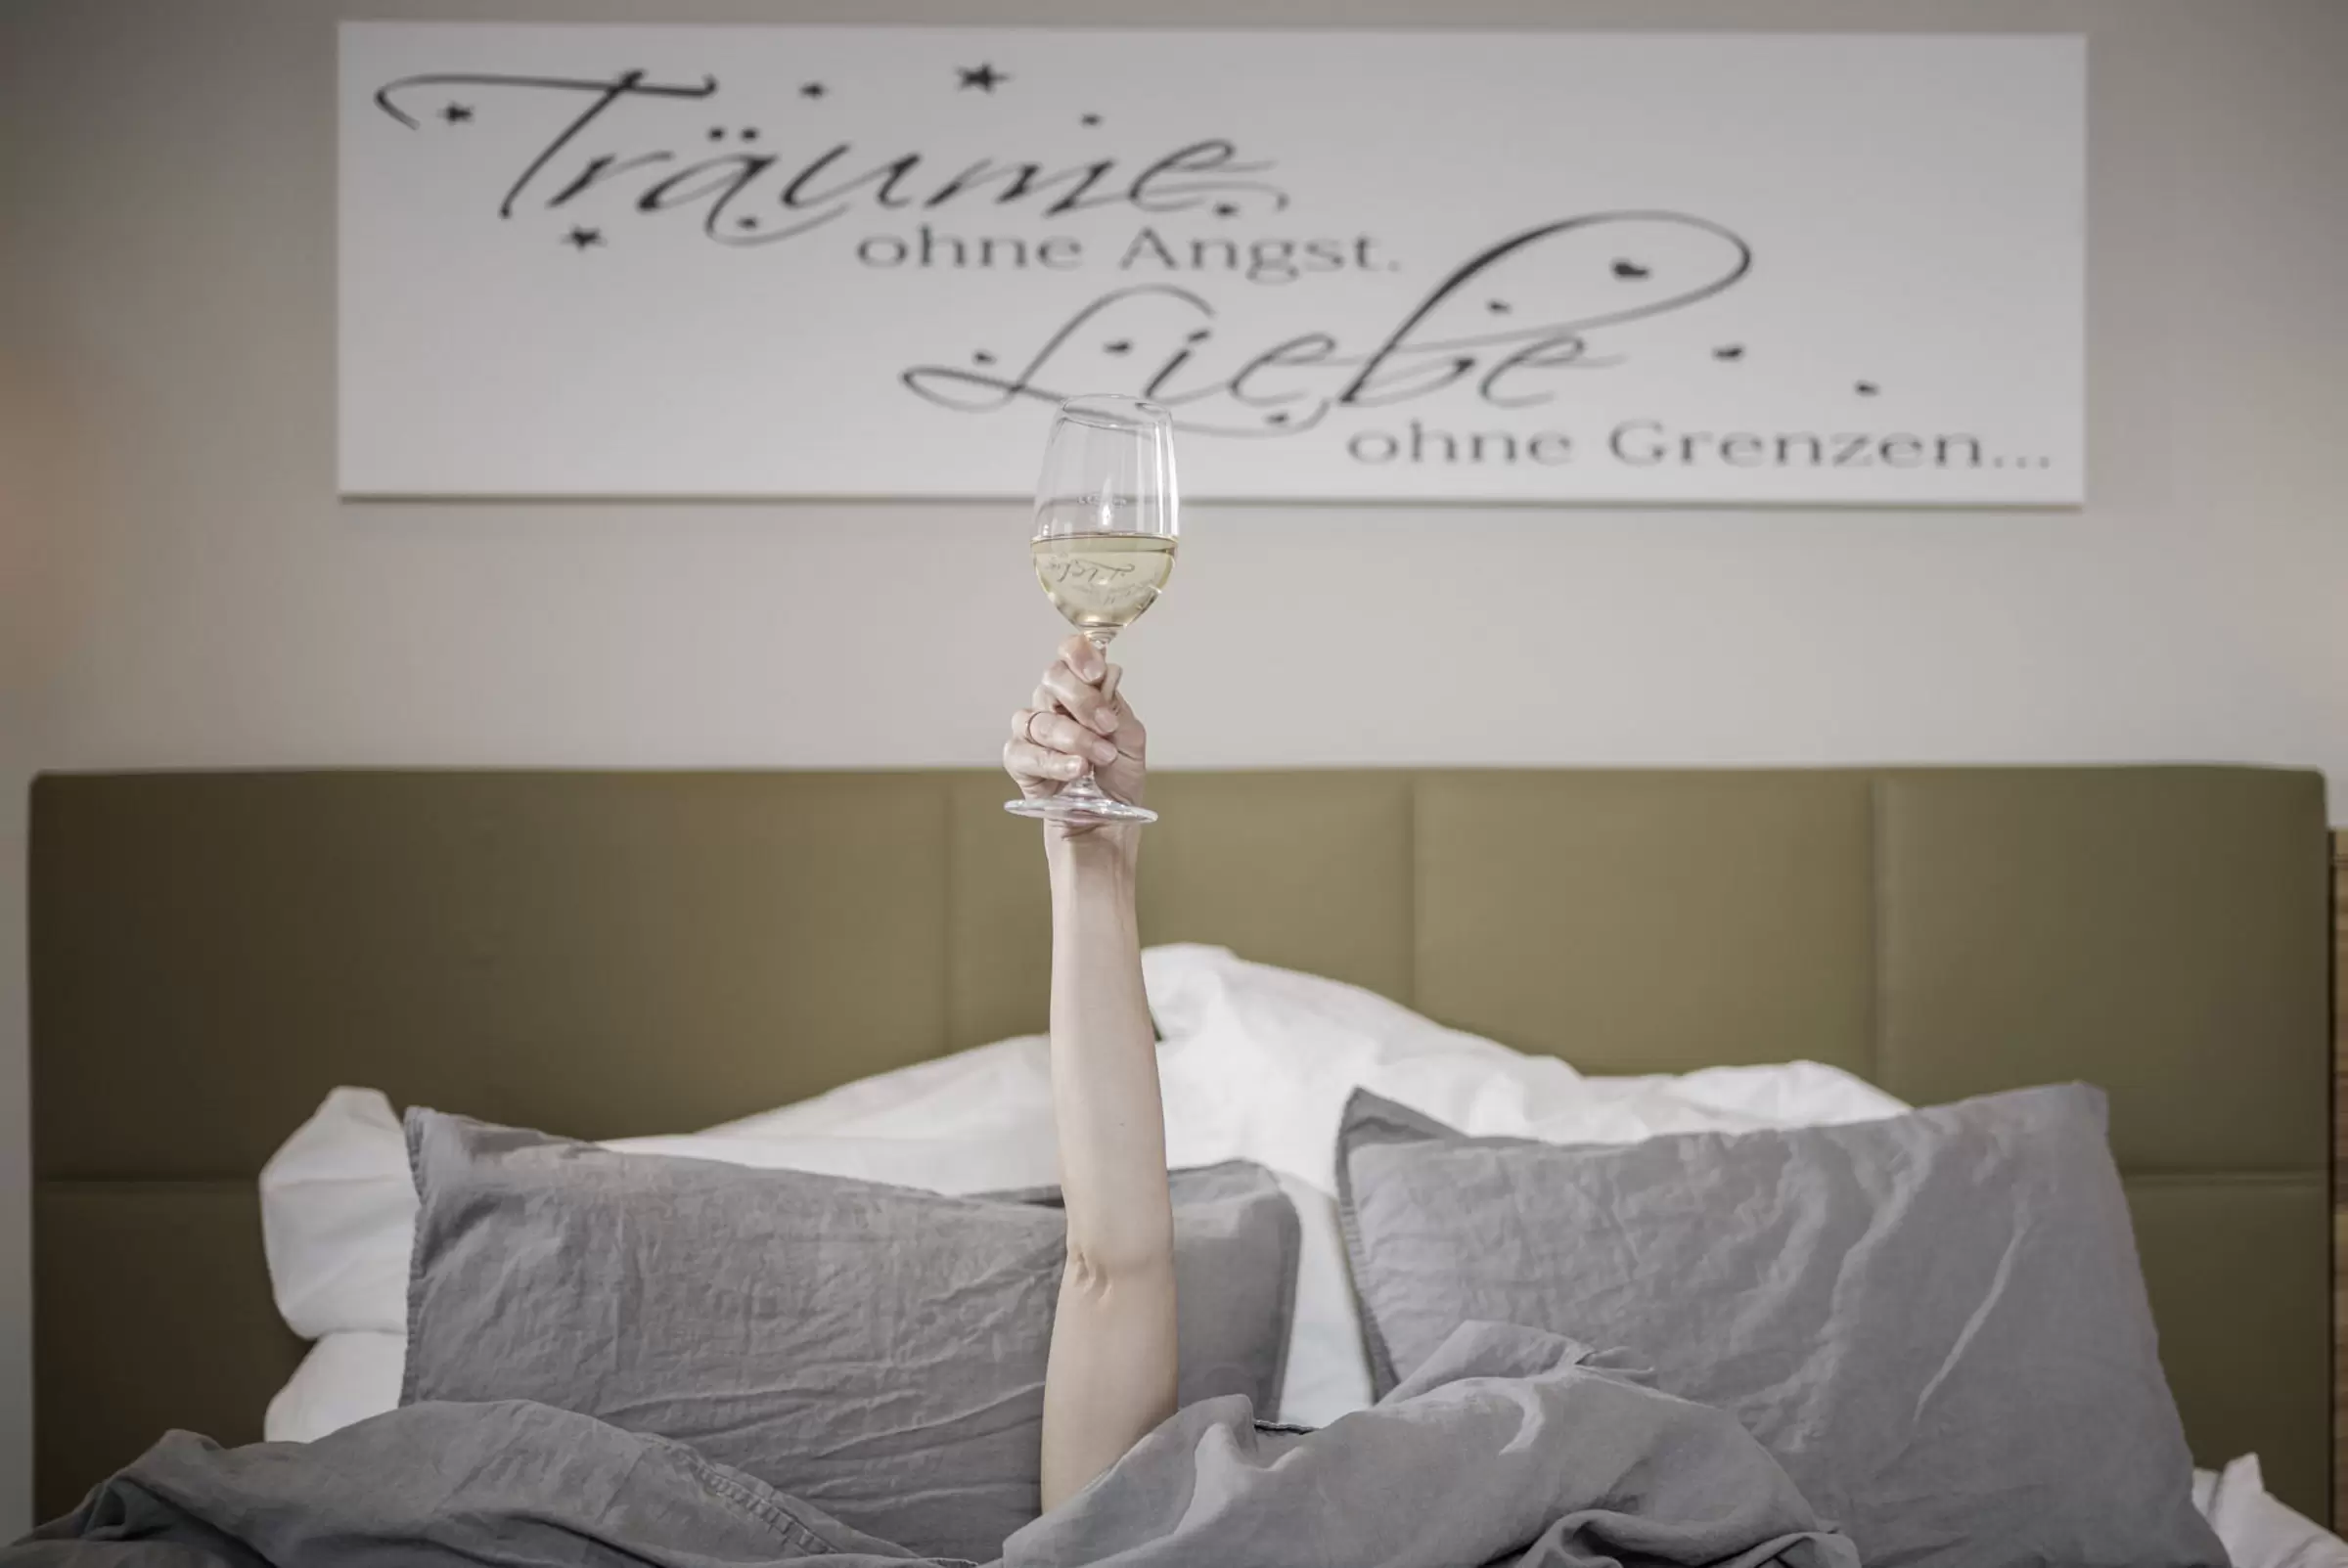 Jordans Untermühle - Wohlfühlzimmer - Arm mit vollen Weinglas aus dem Bett herausgestreckt